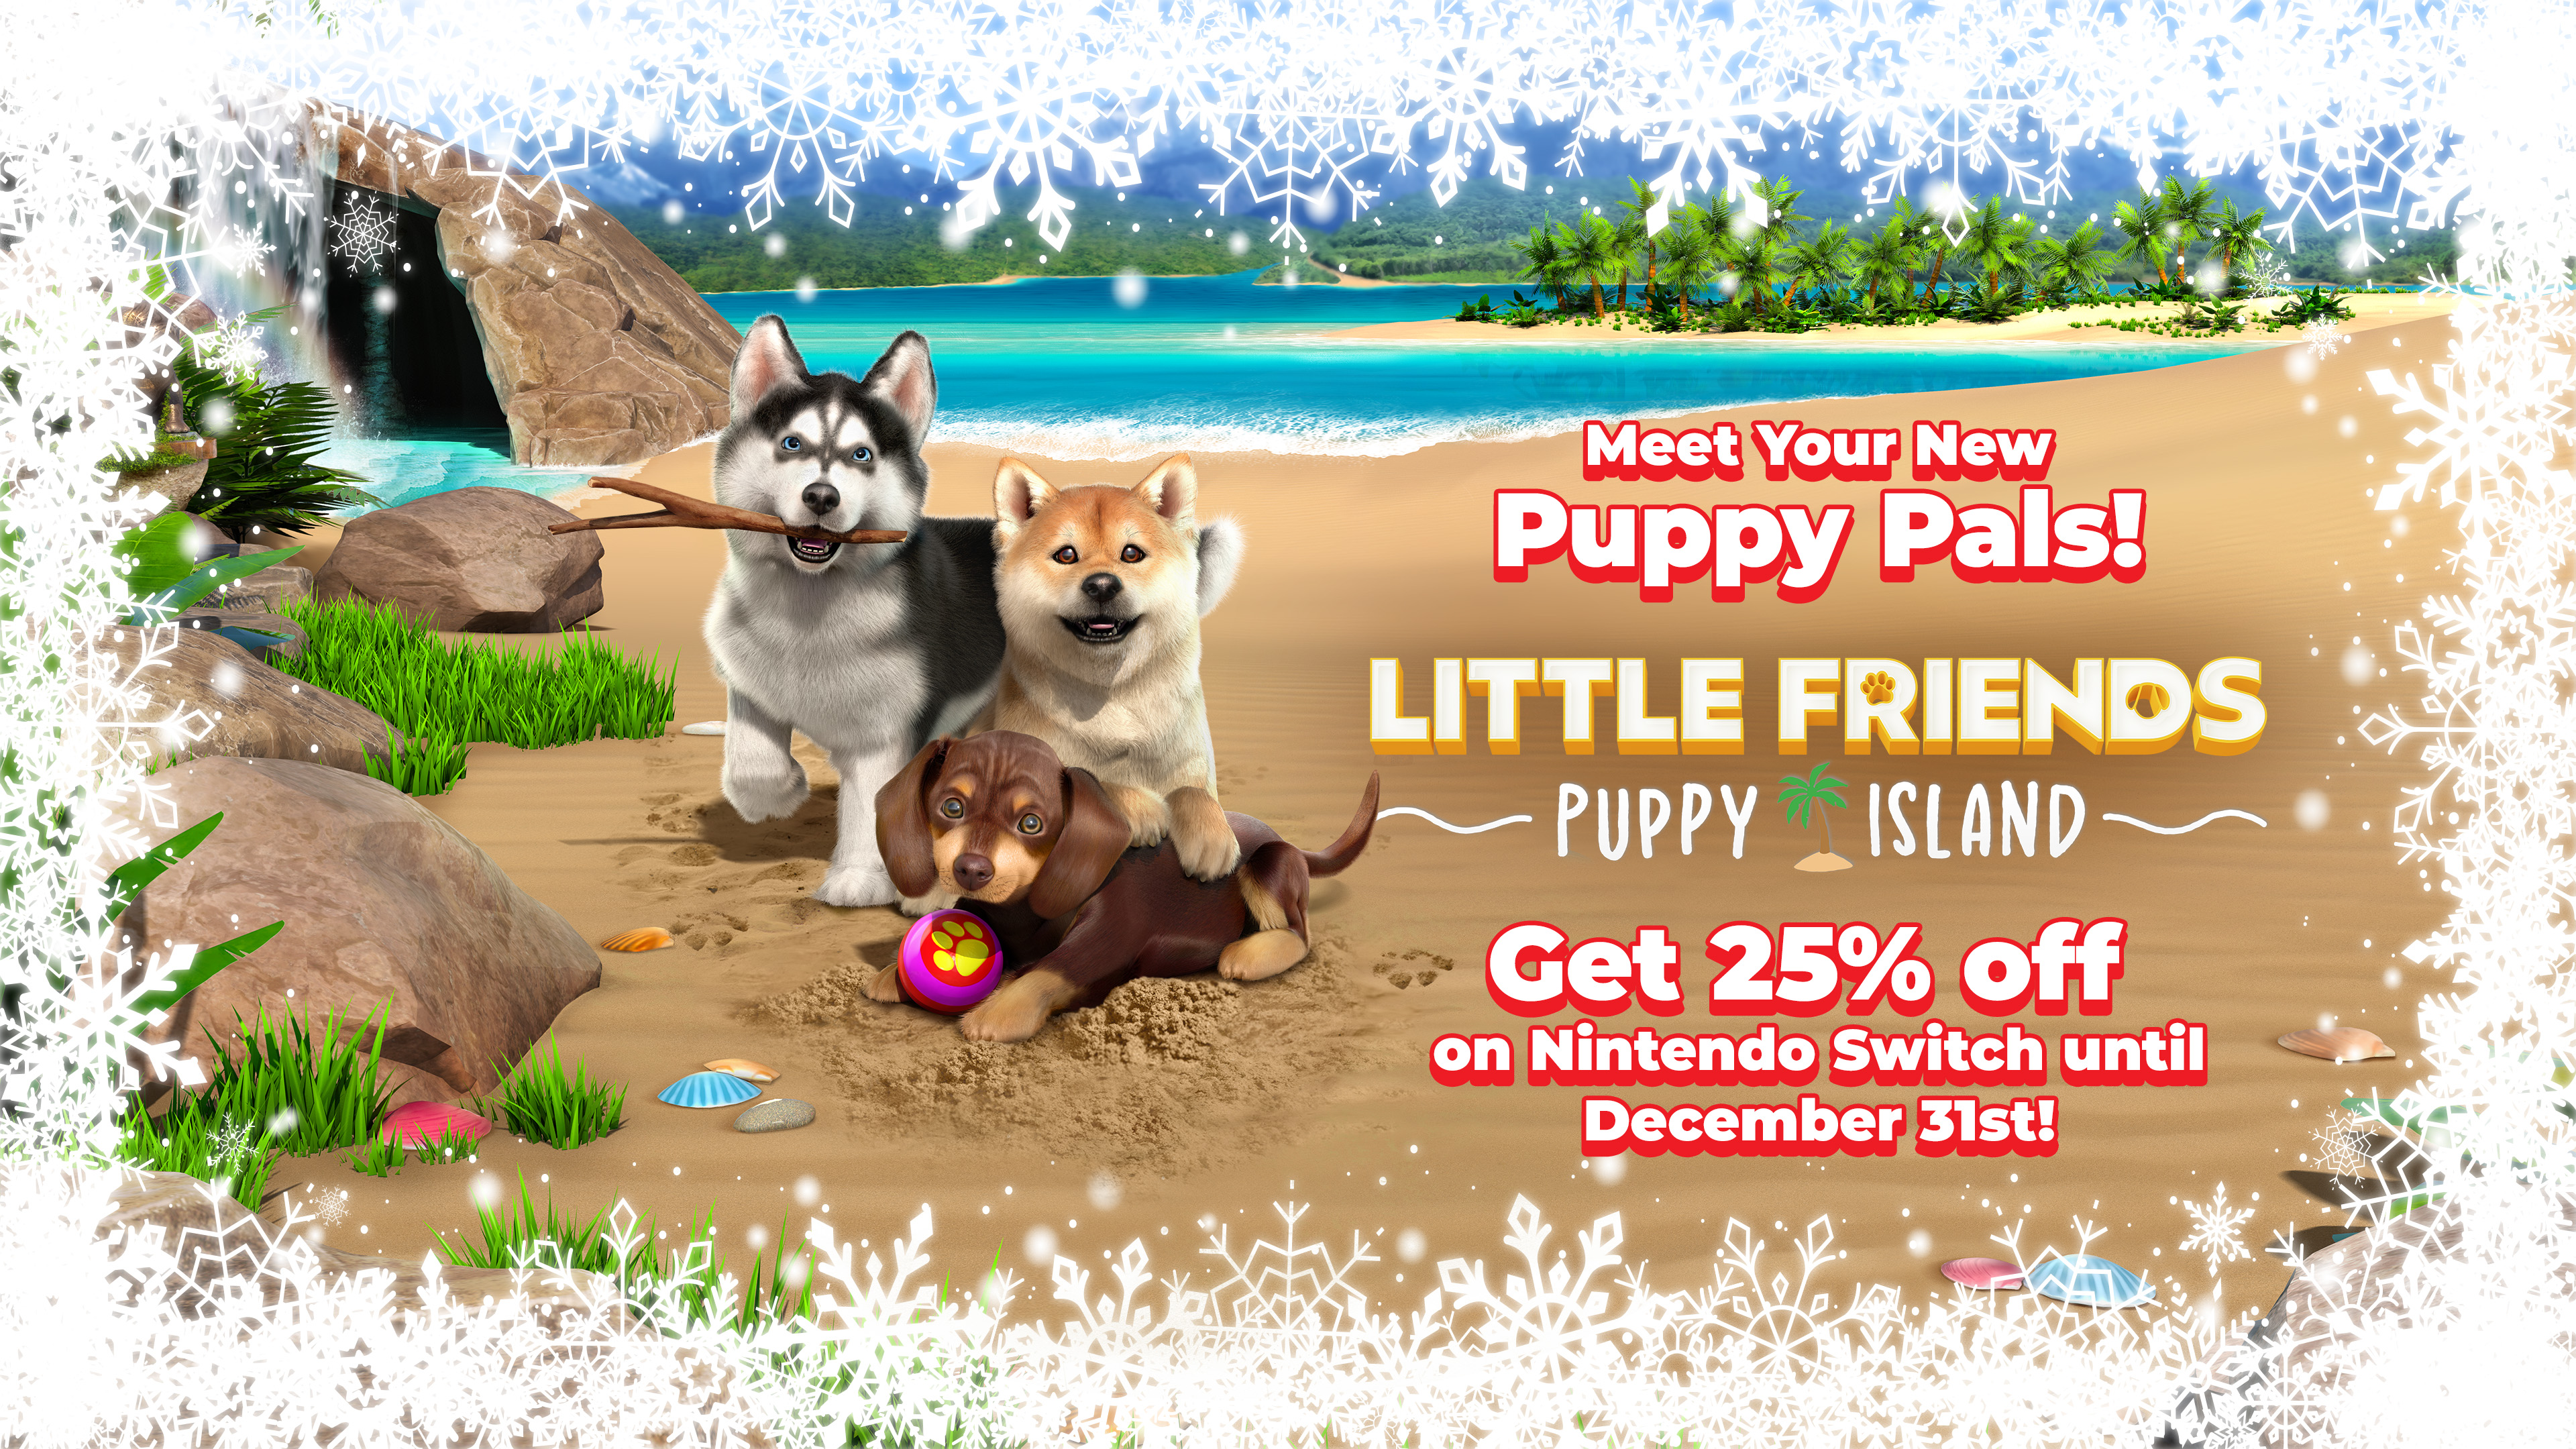 Little Friends: Puppy Island on Nintendo Switch